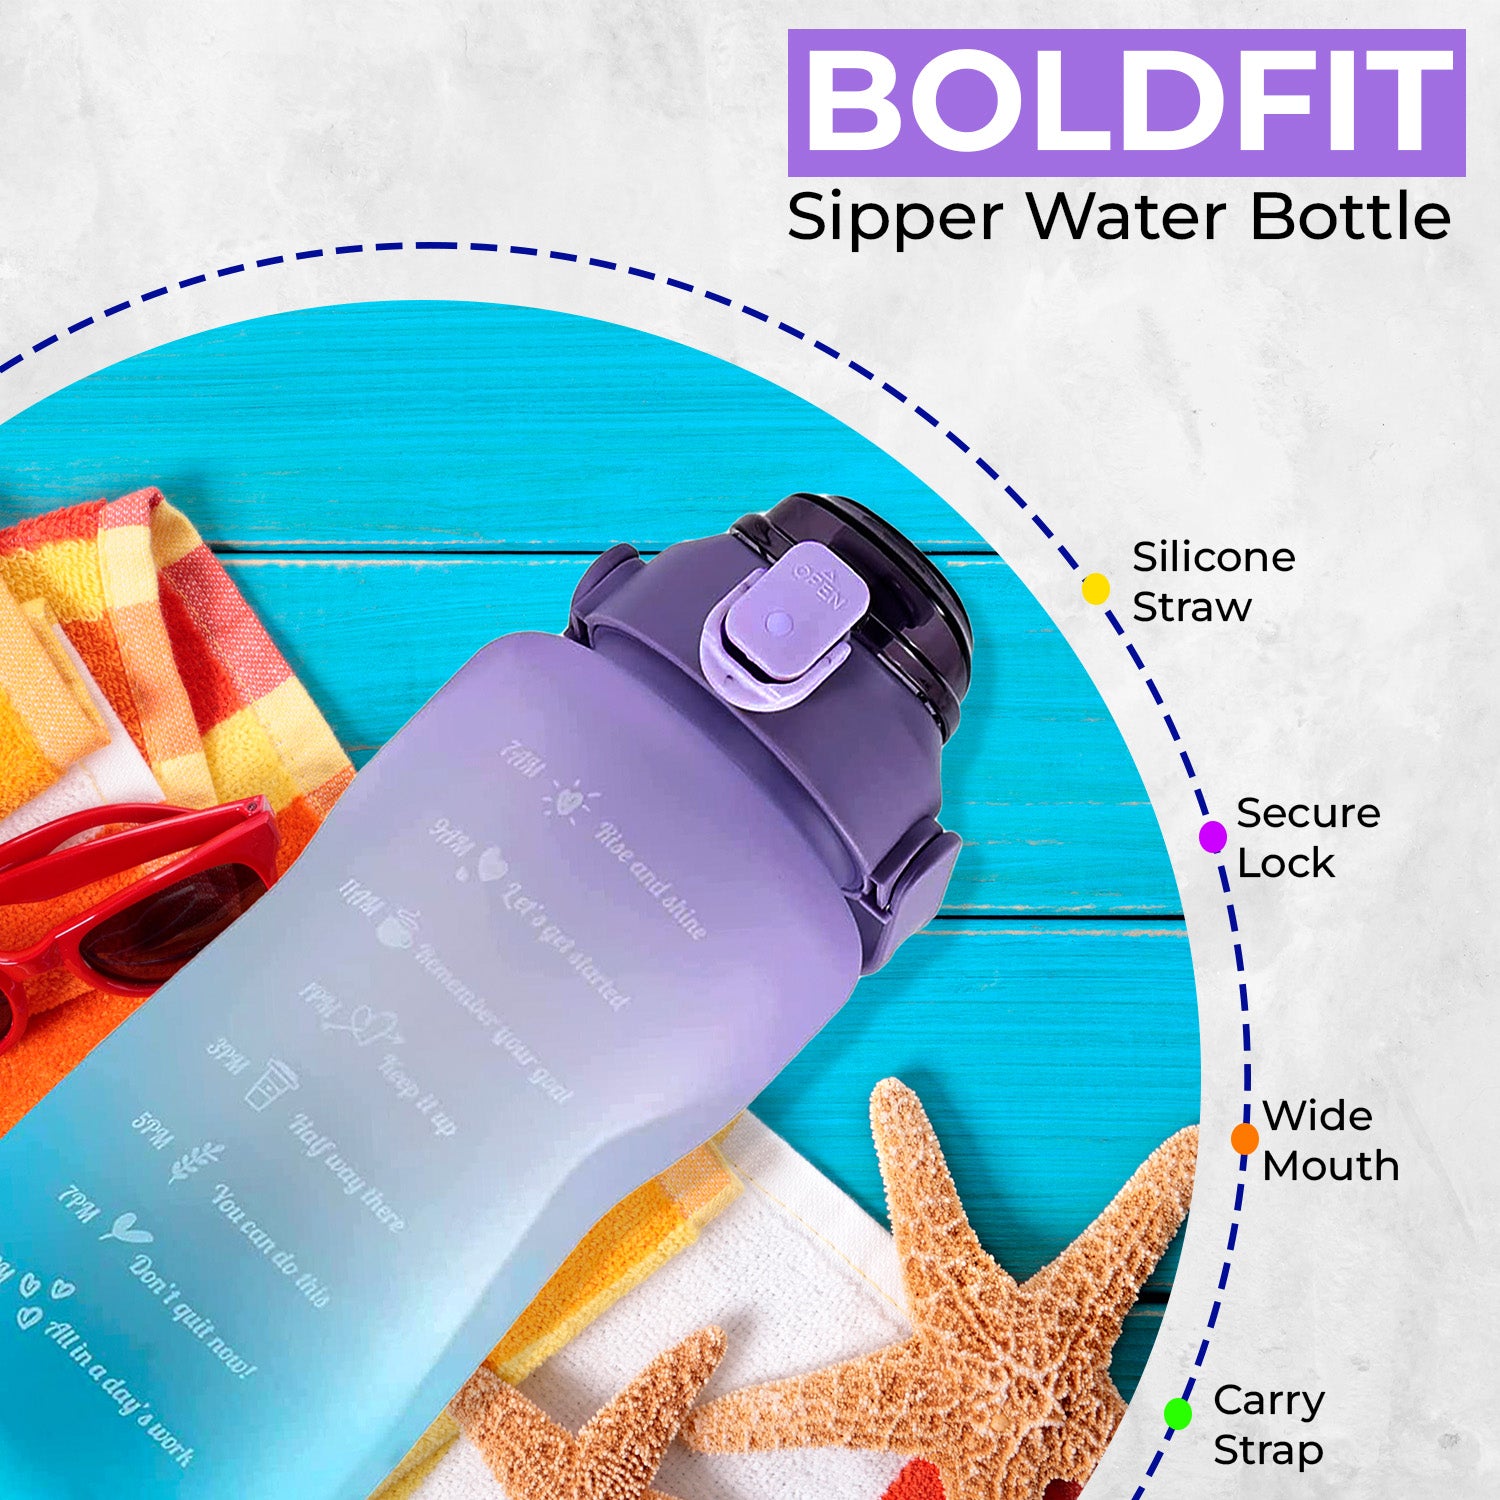 Motivational Gallon Water Bottle -2Ltr